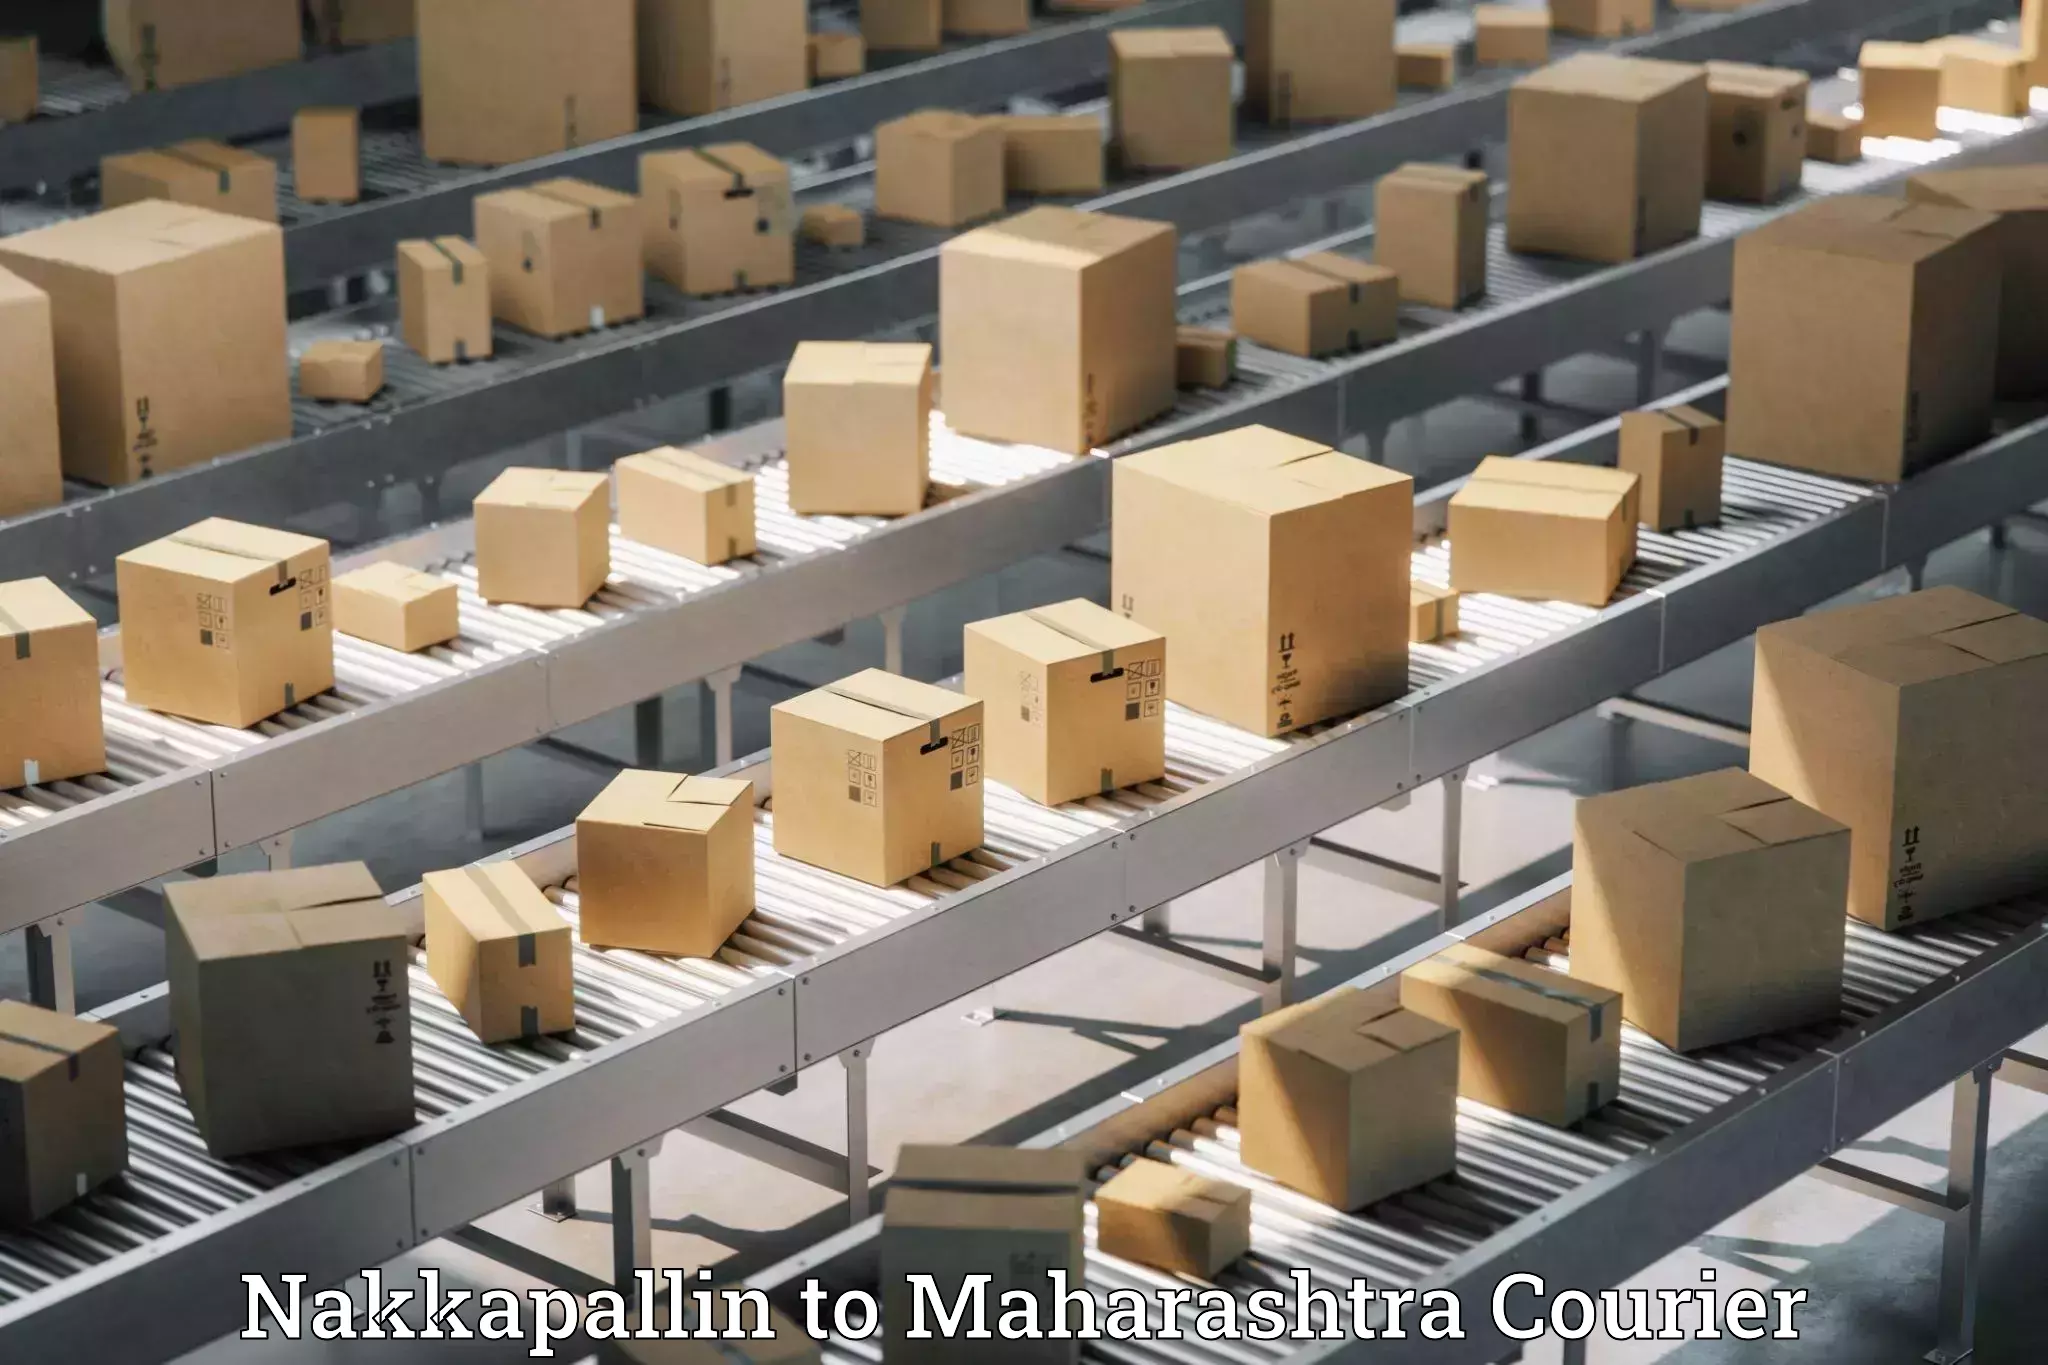 Expedited parcel delivery Nakkapallin to Maharashtra